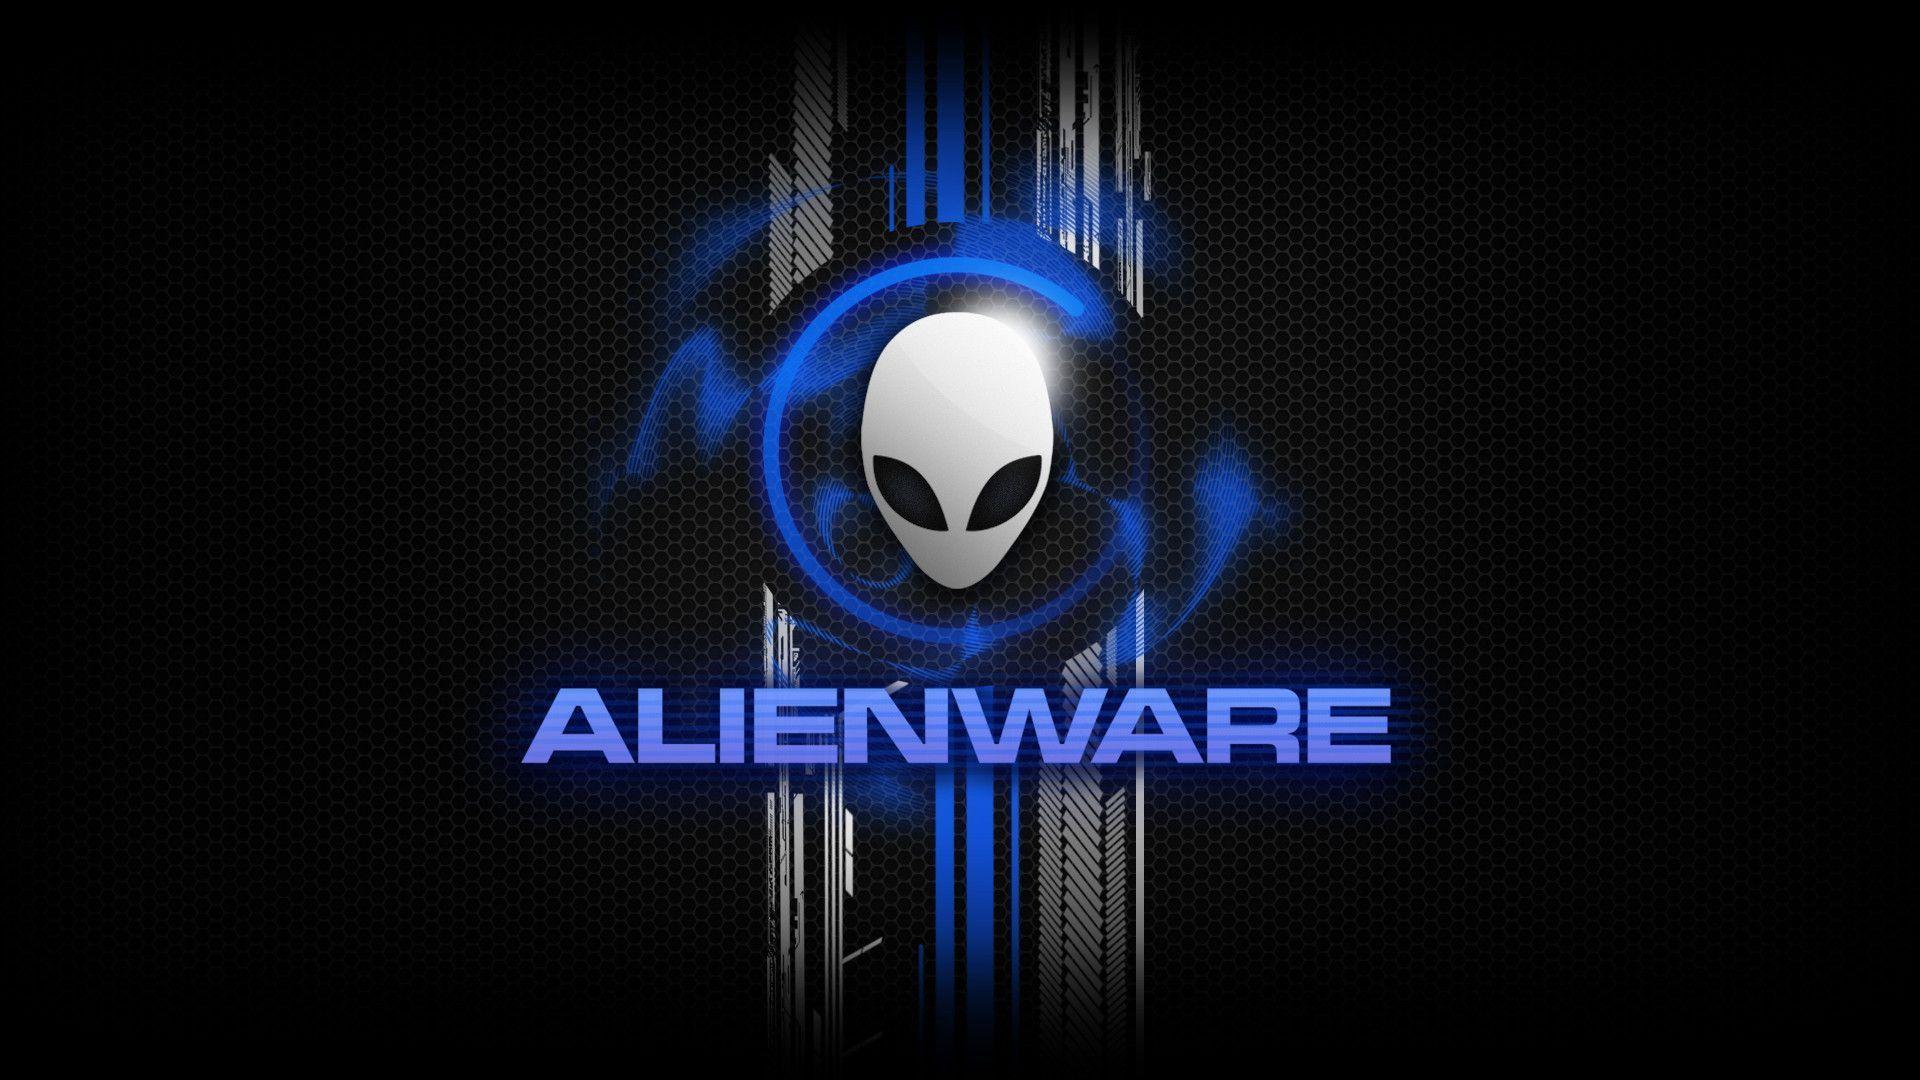 Hình Nền Alienware 4k Ultra Hd Top Những Hình Ảnh Đẹp 5515